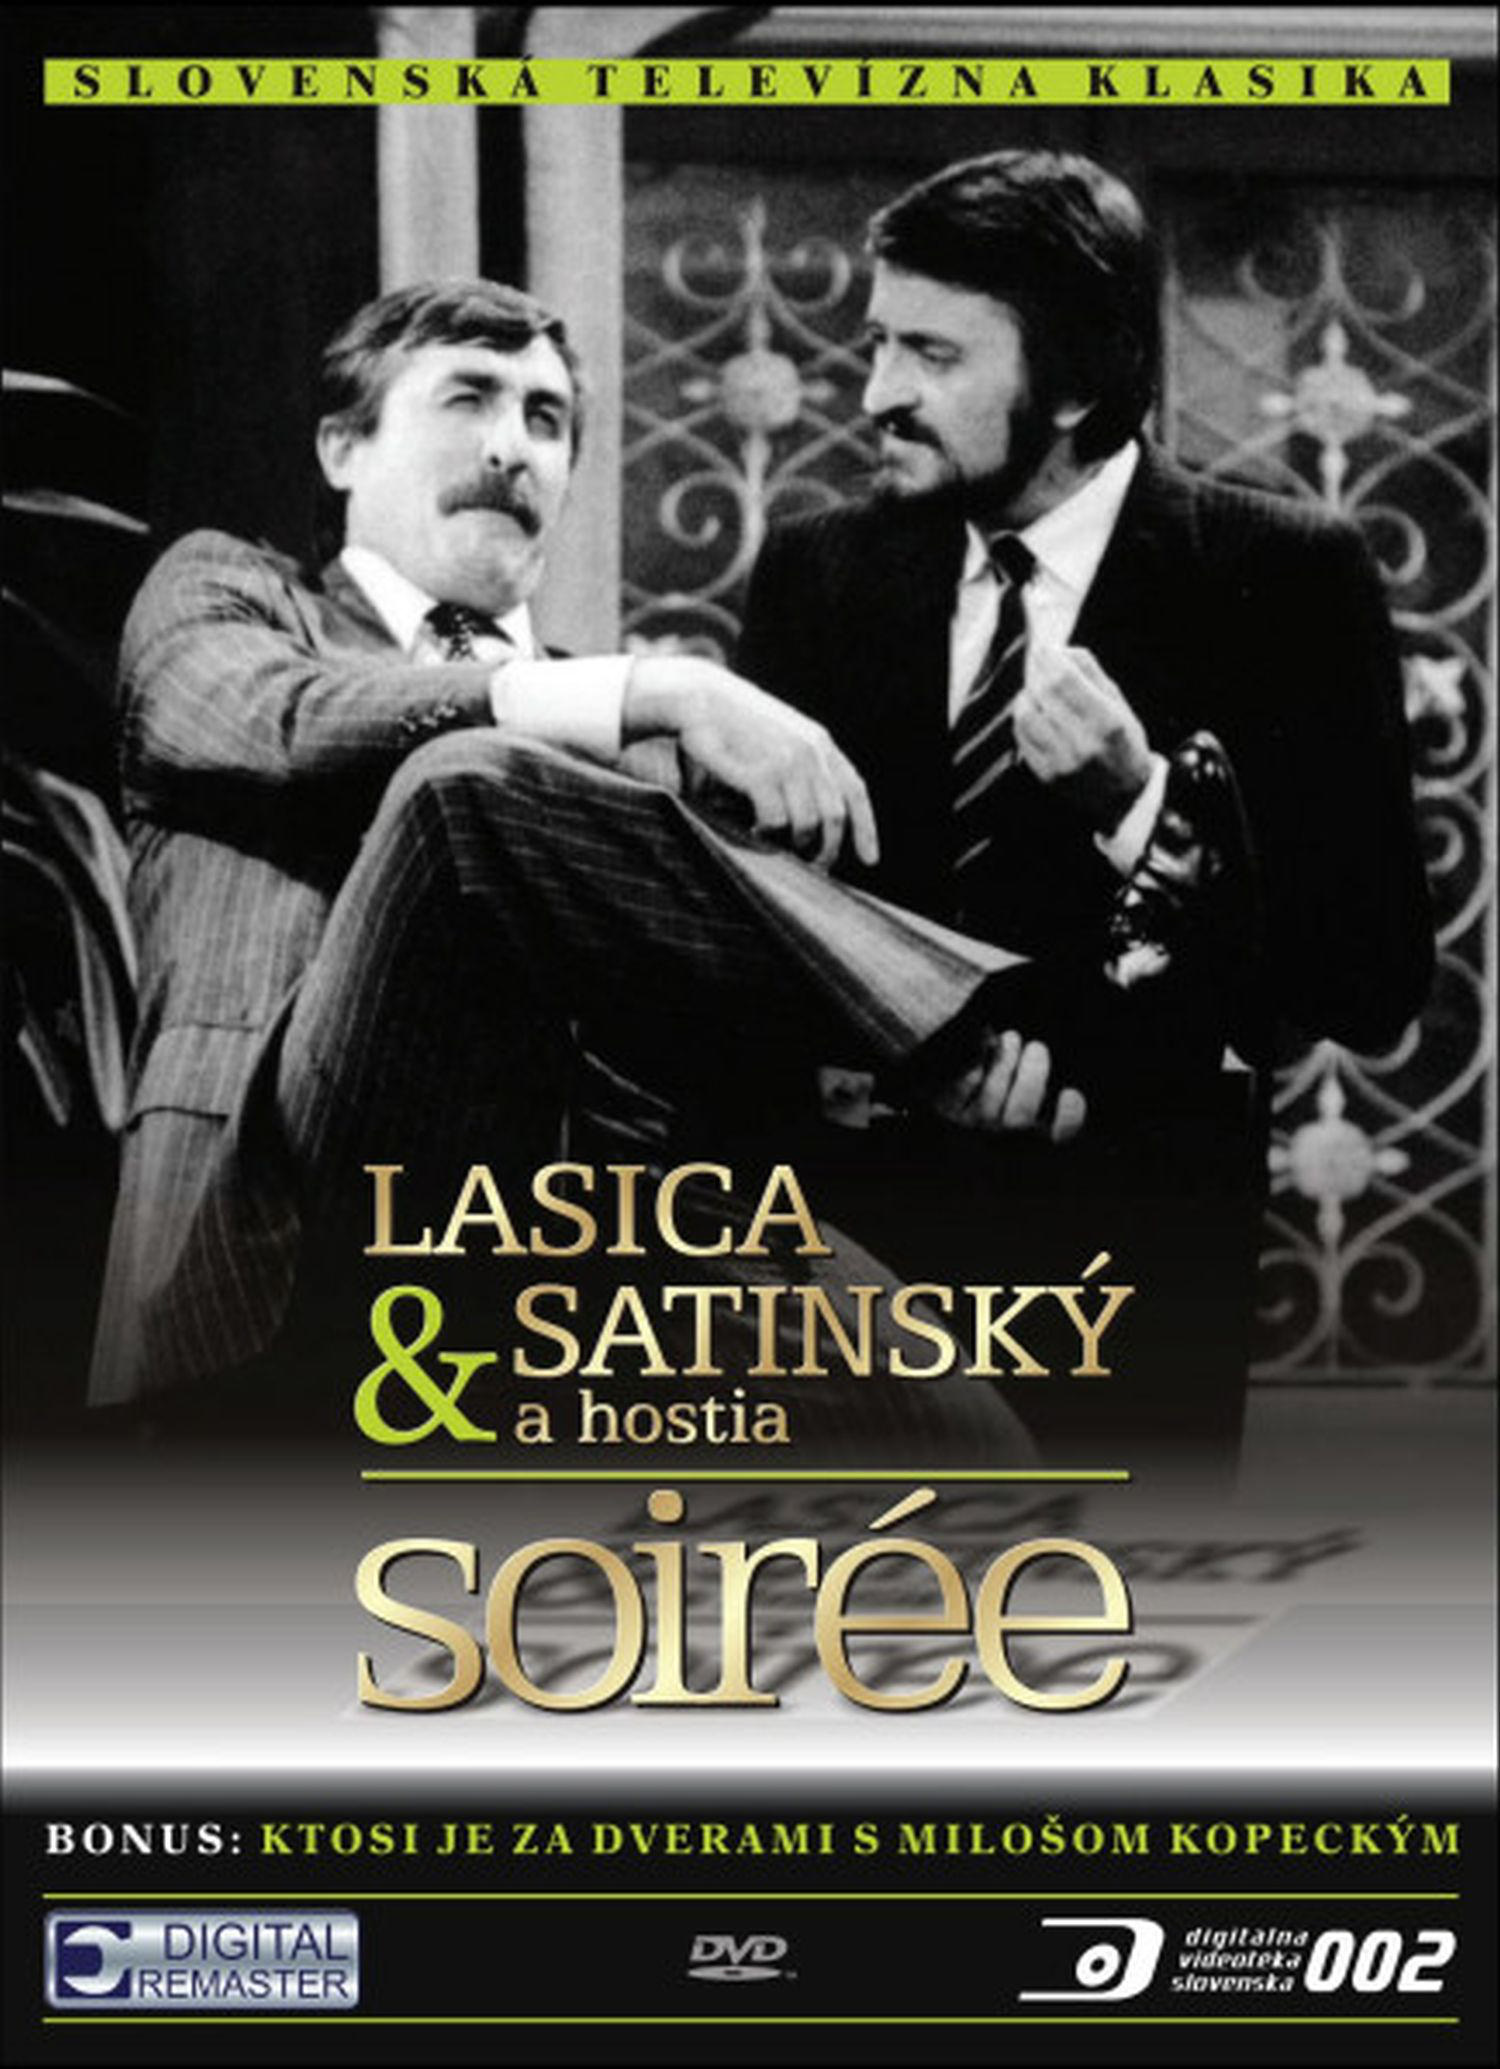 CD Shop - LASICA, SATINSKY SOIREE